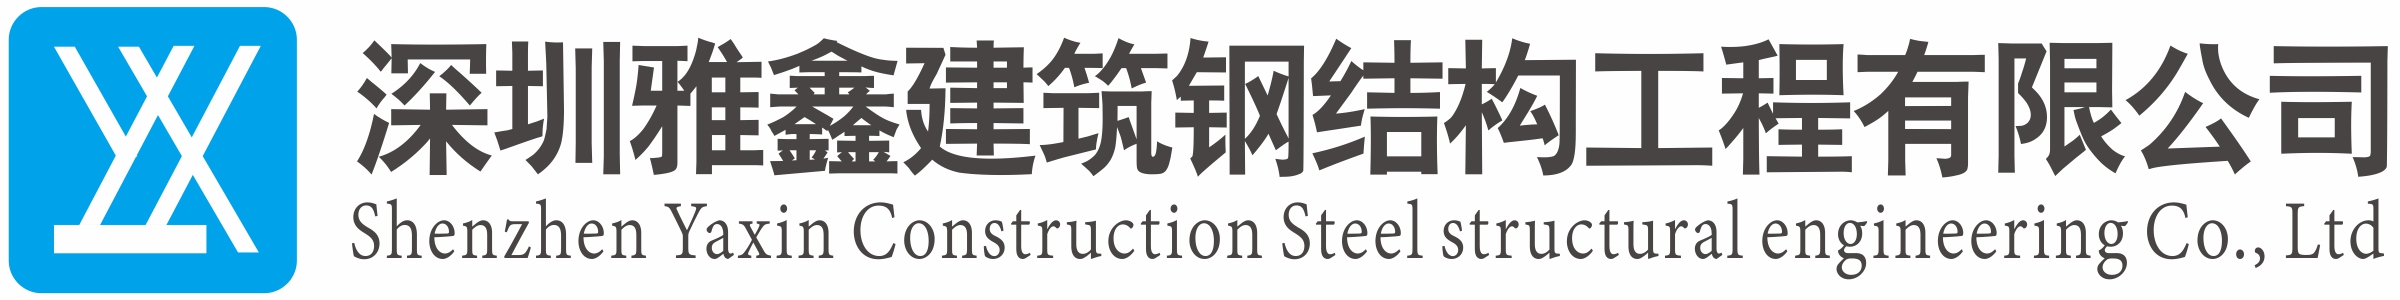 深圳雅鑫建筑钢结构工程有限公司